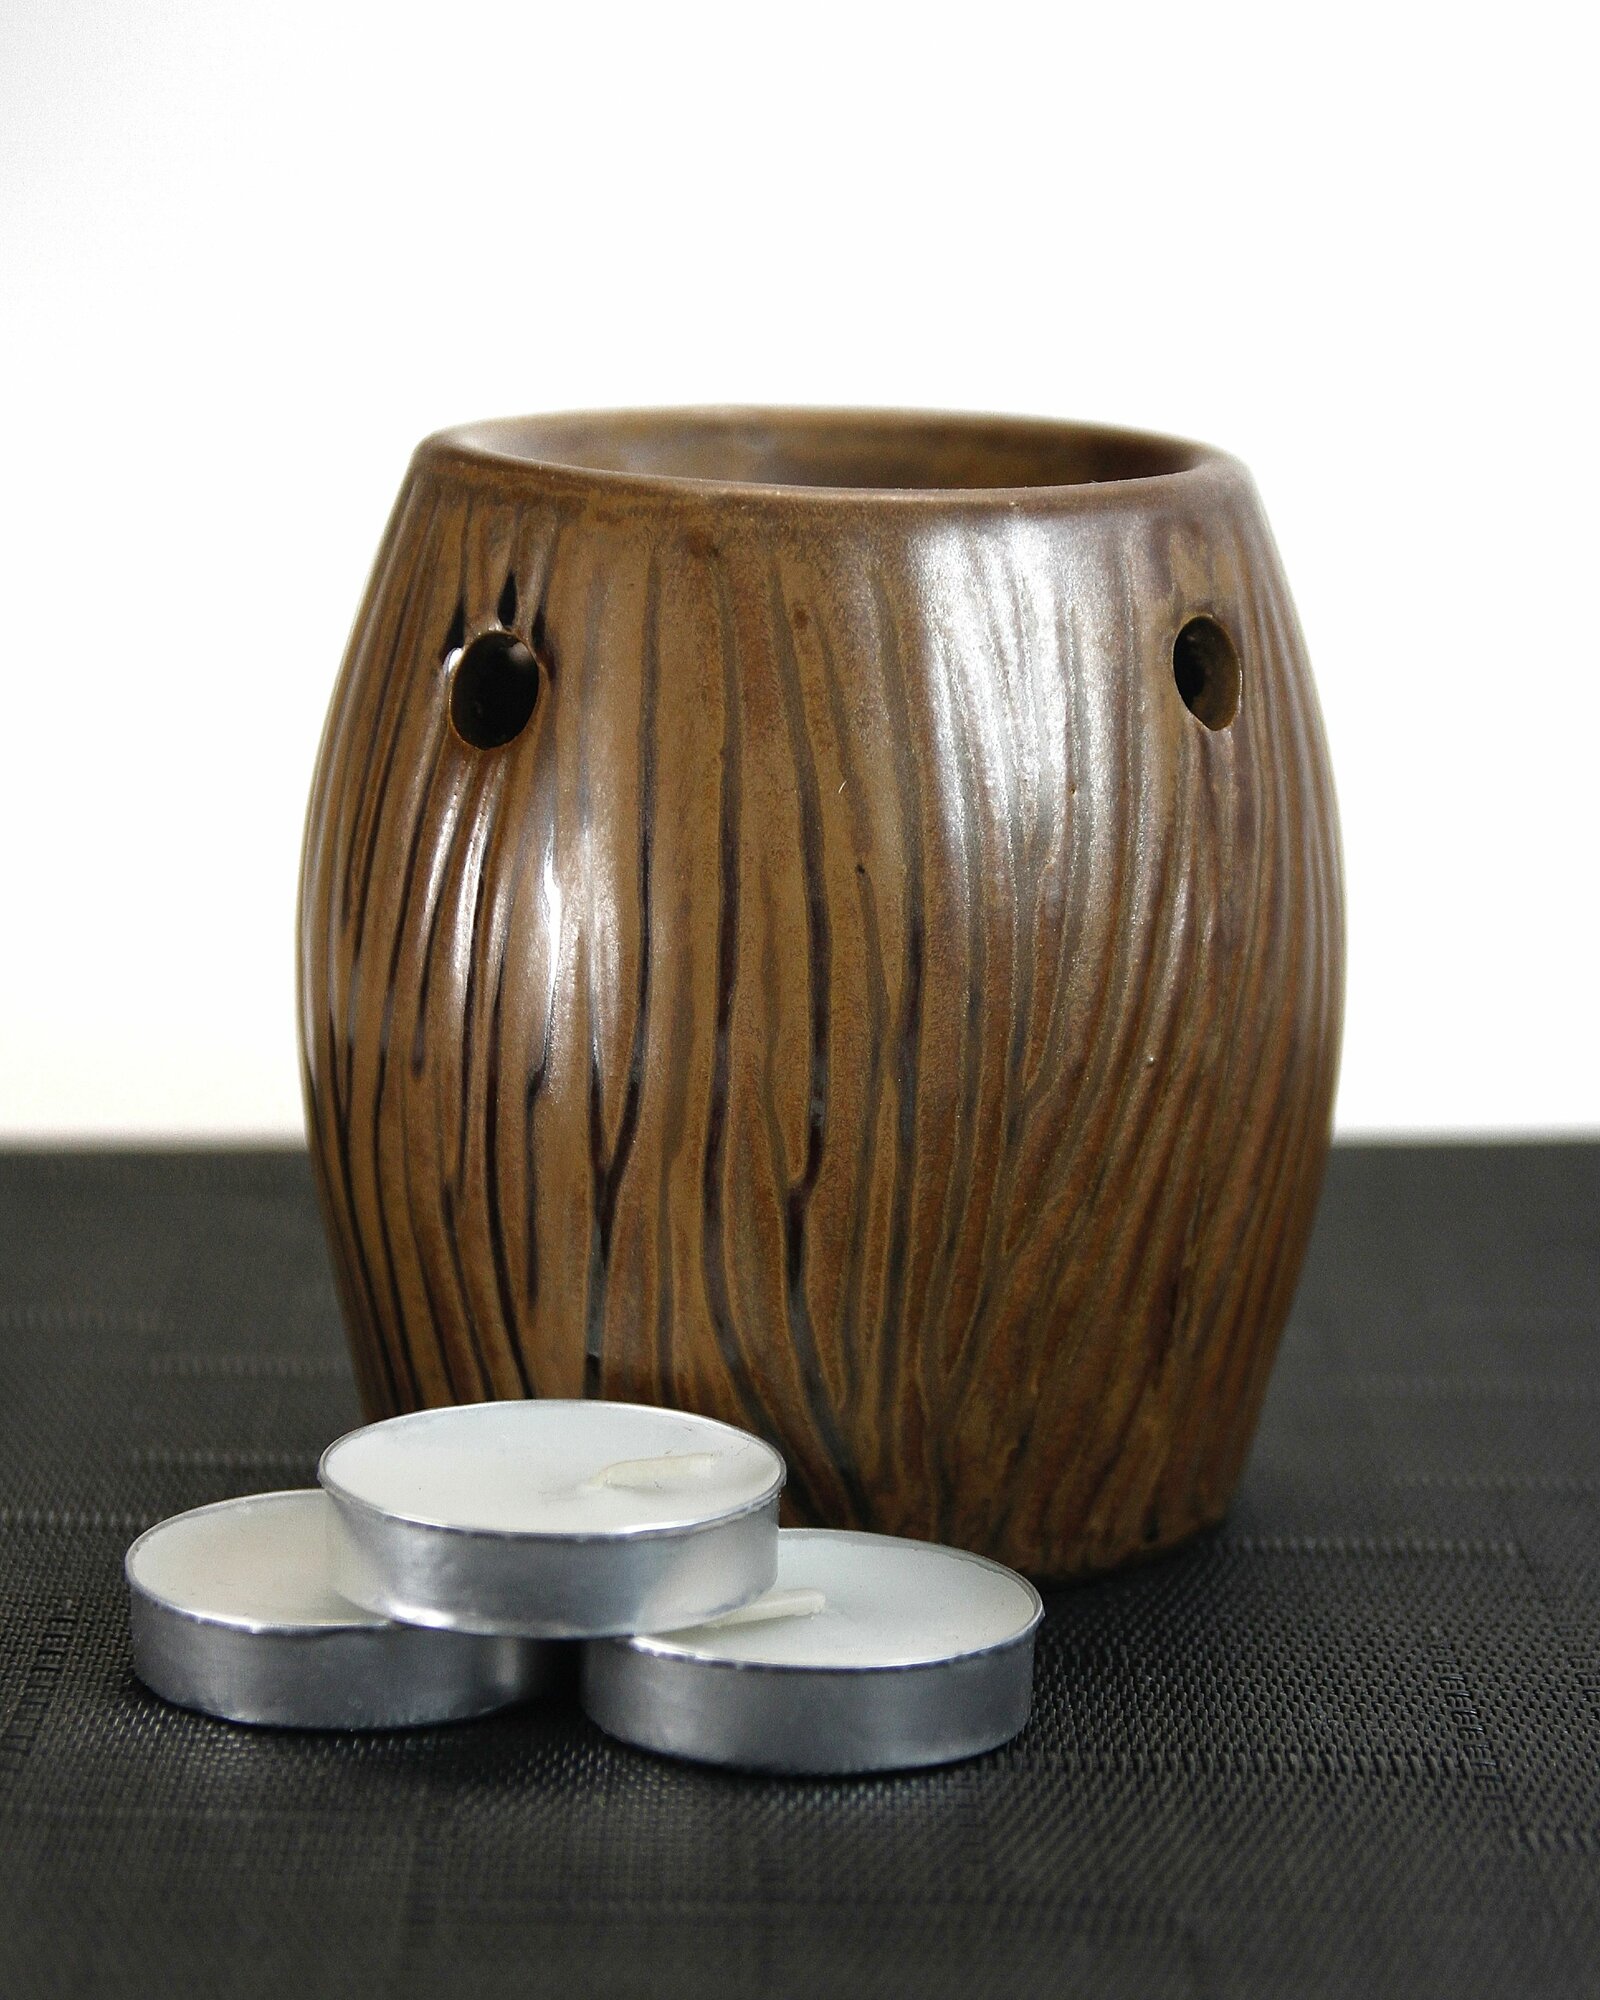 Аромалампа Волшебное дерево - 9 см, коричневая, керамика + 3 чайные свечи - для аромавоска, эфирных масел и создания уюта в доме